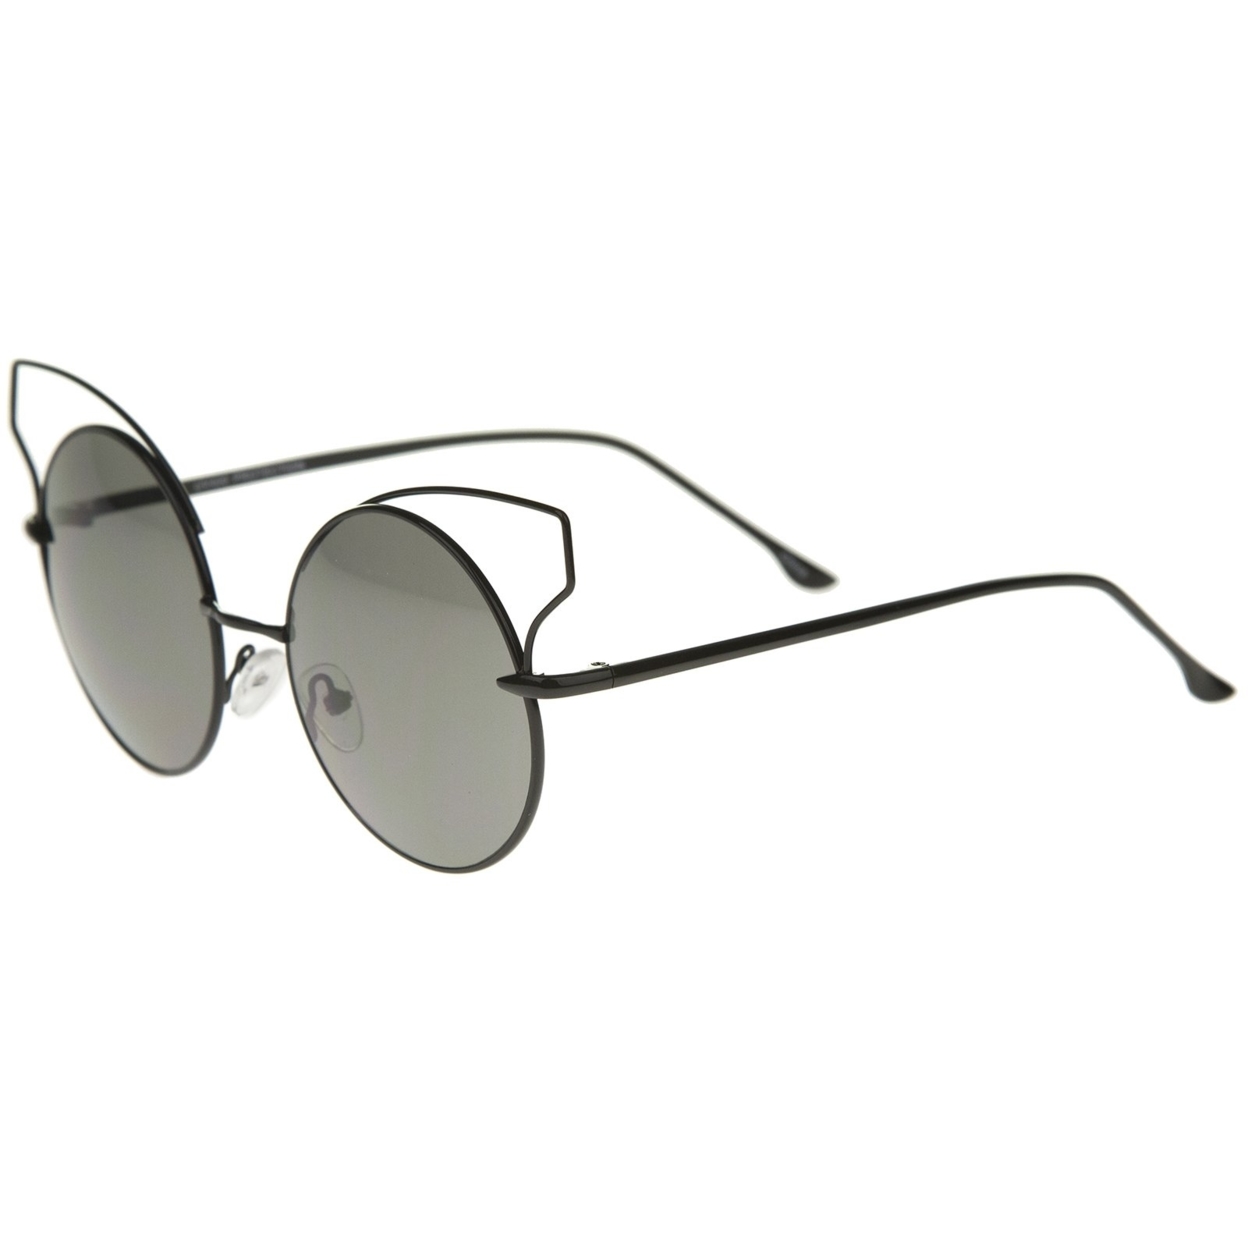 Women's Full Metal Open Design Frame Round Cat Eye Sunglasses 55mm - Gold / Brown